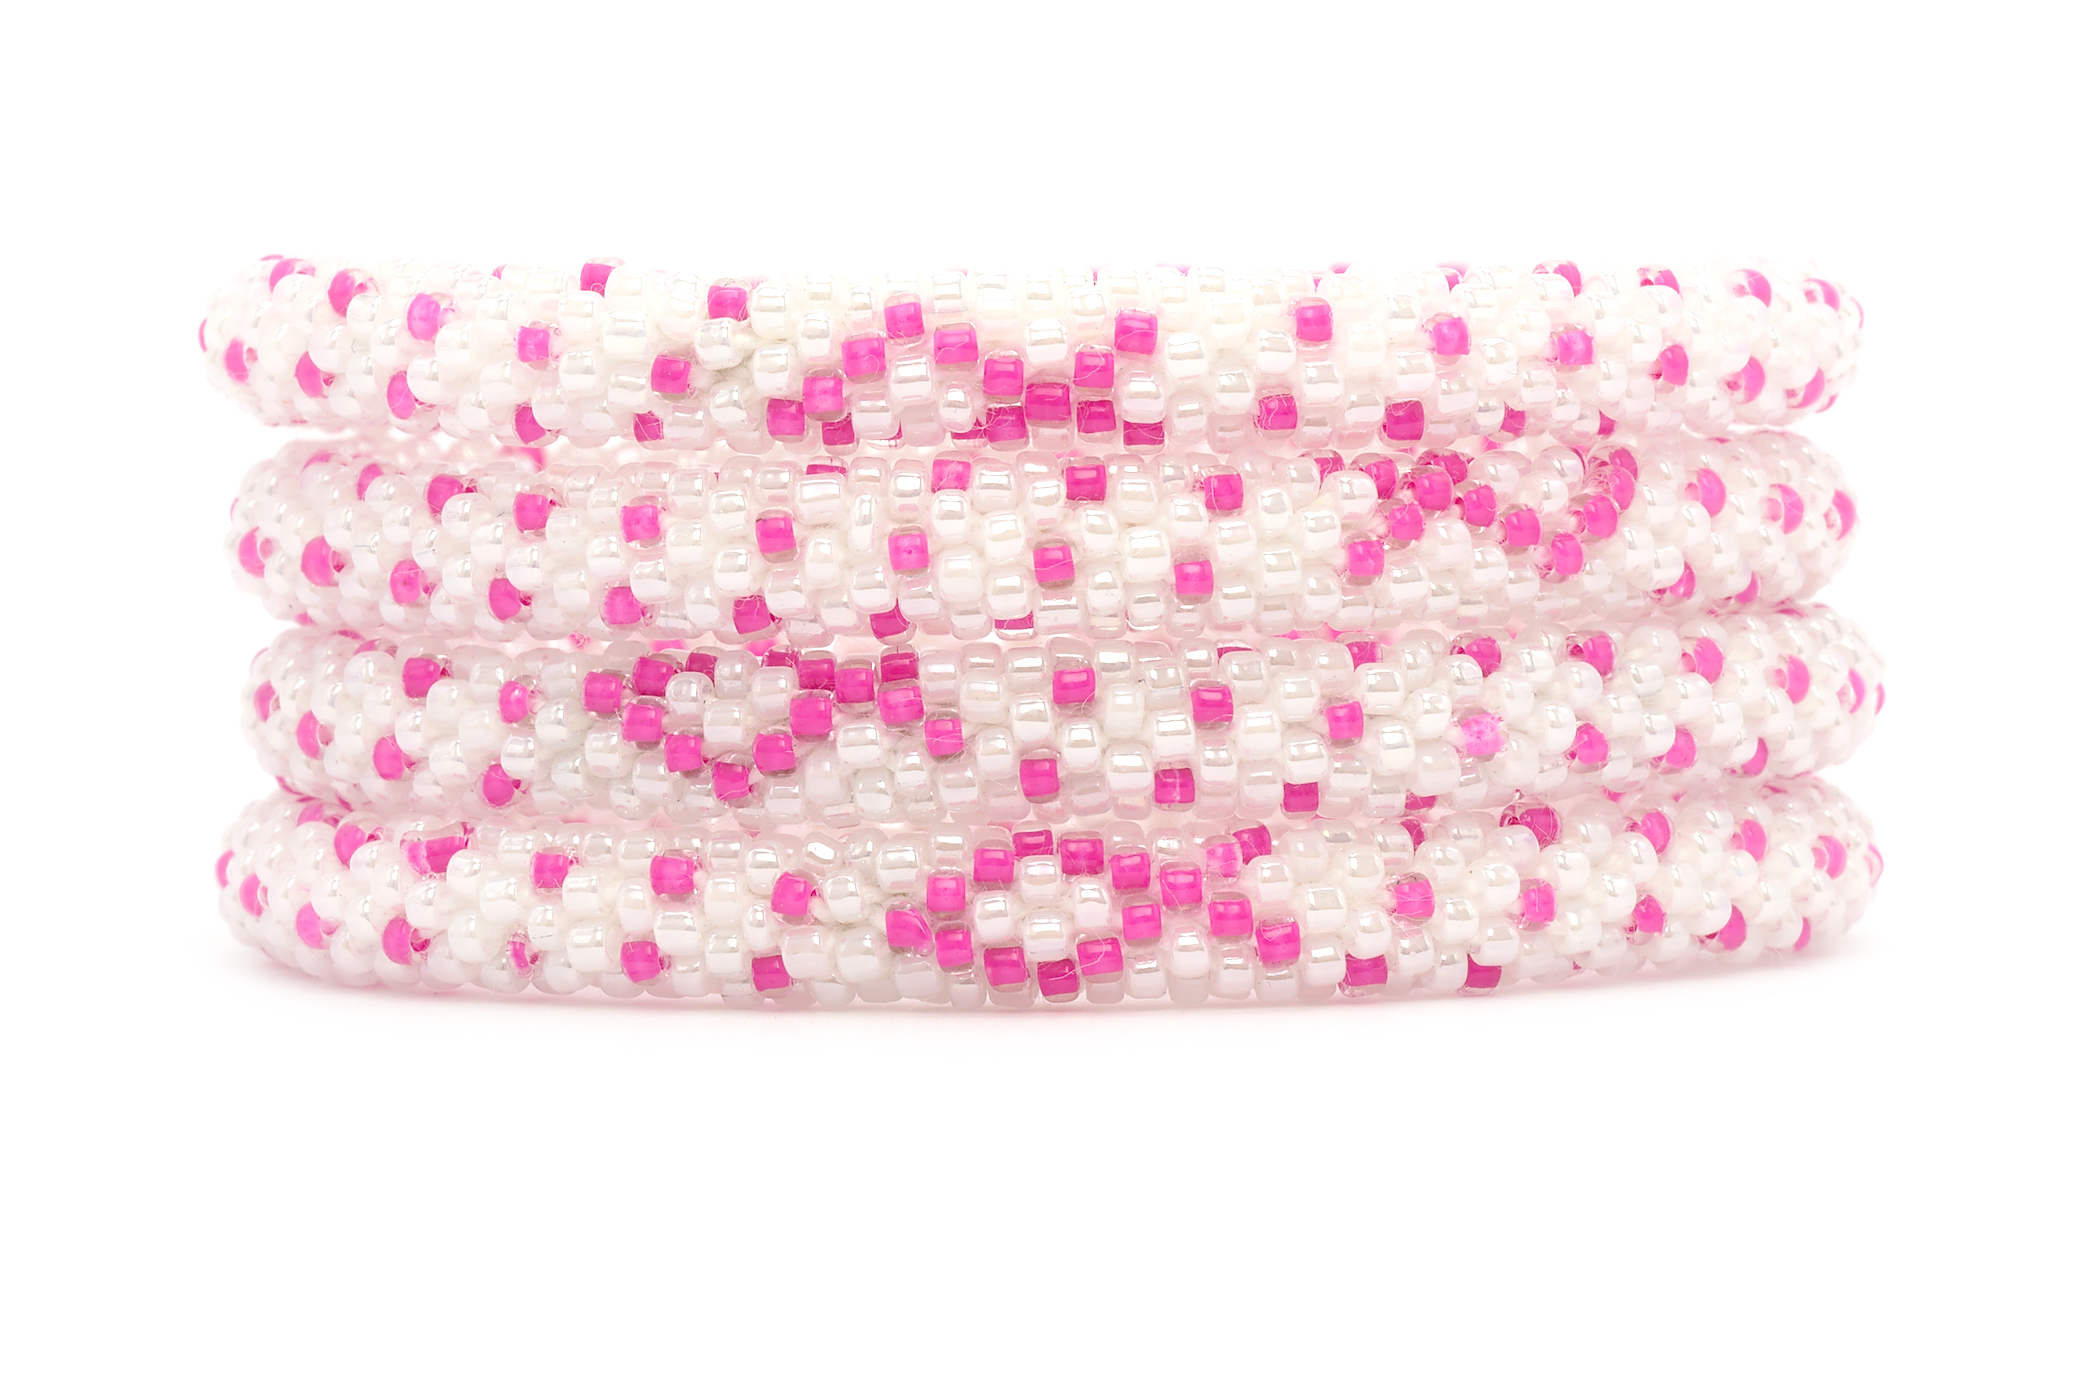 Sashka Co. Extended 8" Bracelet White / Pink Breast Cancer Awareness Bracelet - Extended 8"